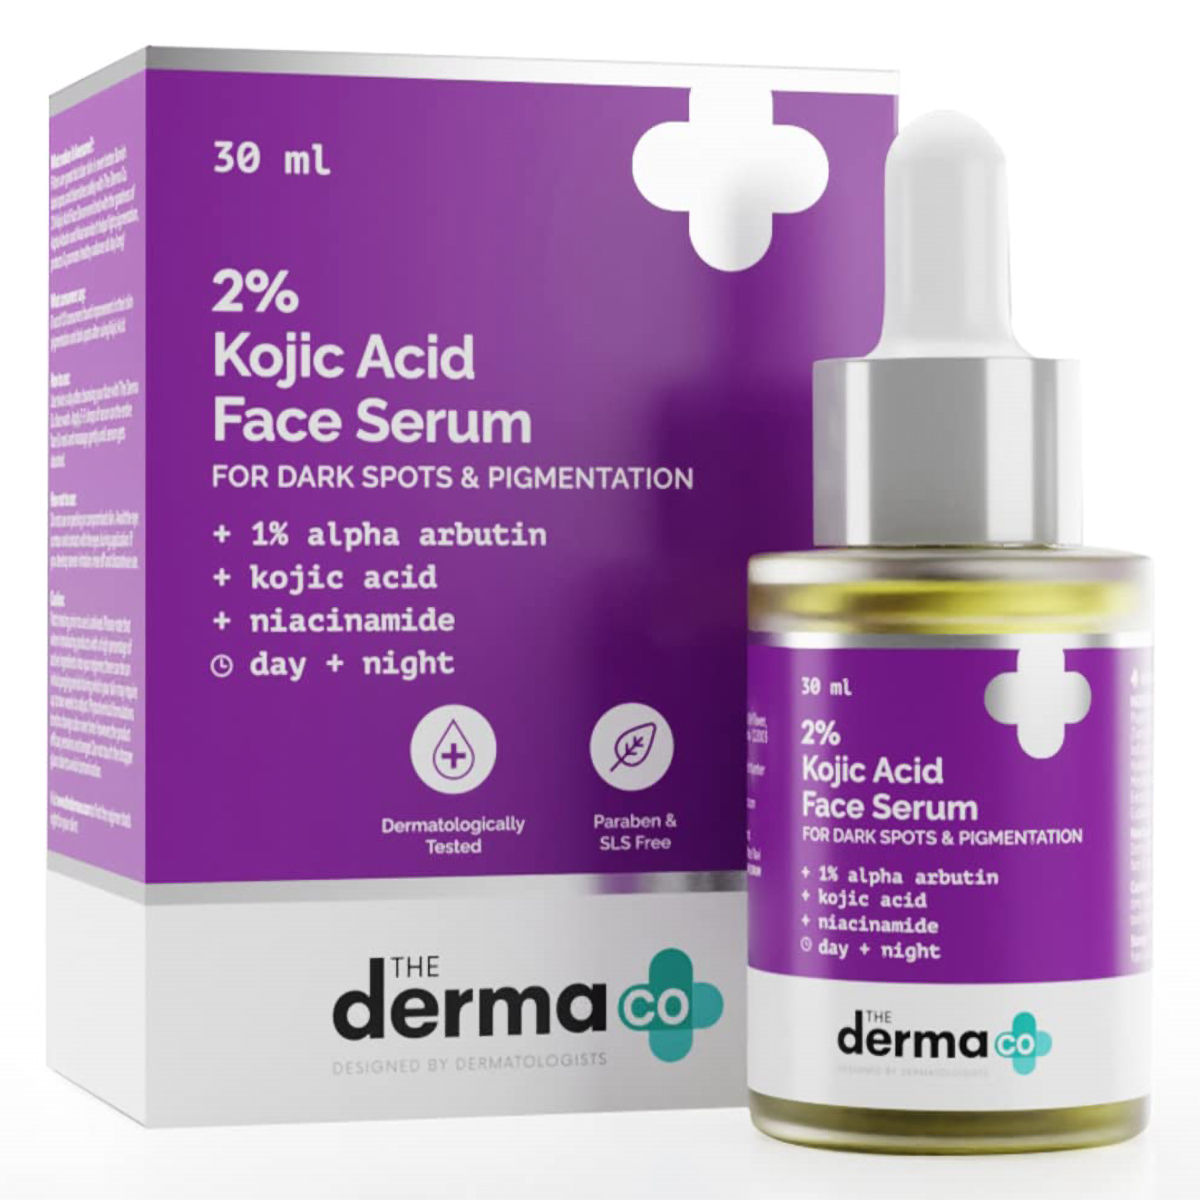 Buy The Derma Co 2% Kojic Acid Face Serum, 30 ml Online